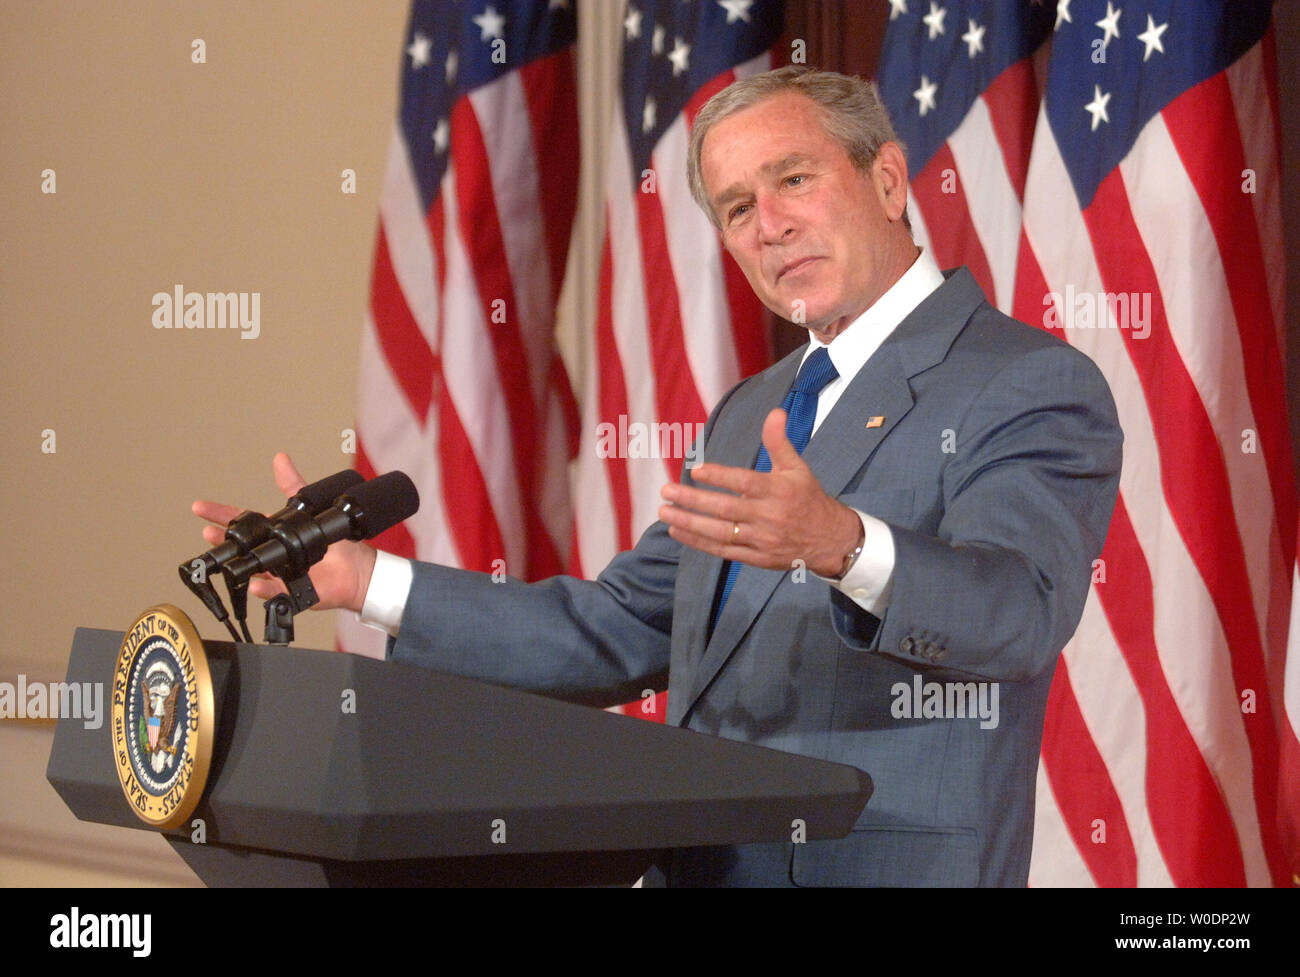 Le président américain George W. Bush prononce une allocution sur la réforme de l'immigration à l'Eisenhower Executive Office Building à Washington le 26 juin 2007. (UPI Photo/Kevin Dietsch) Banque D'Images